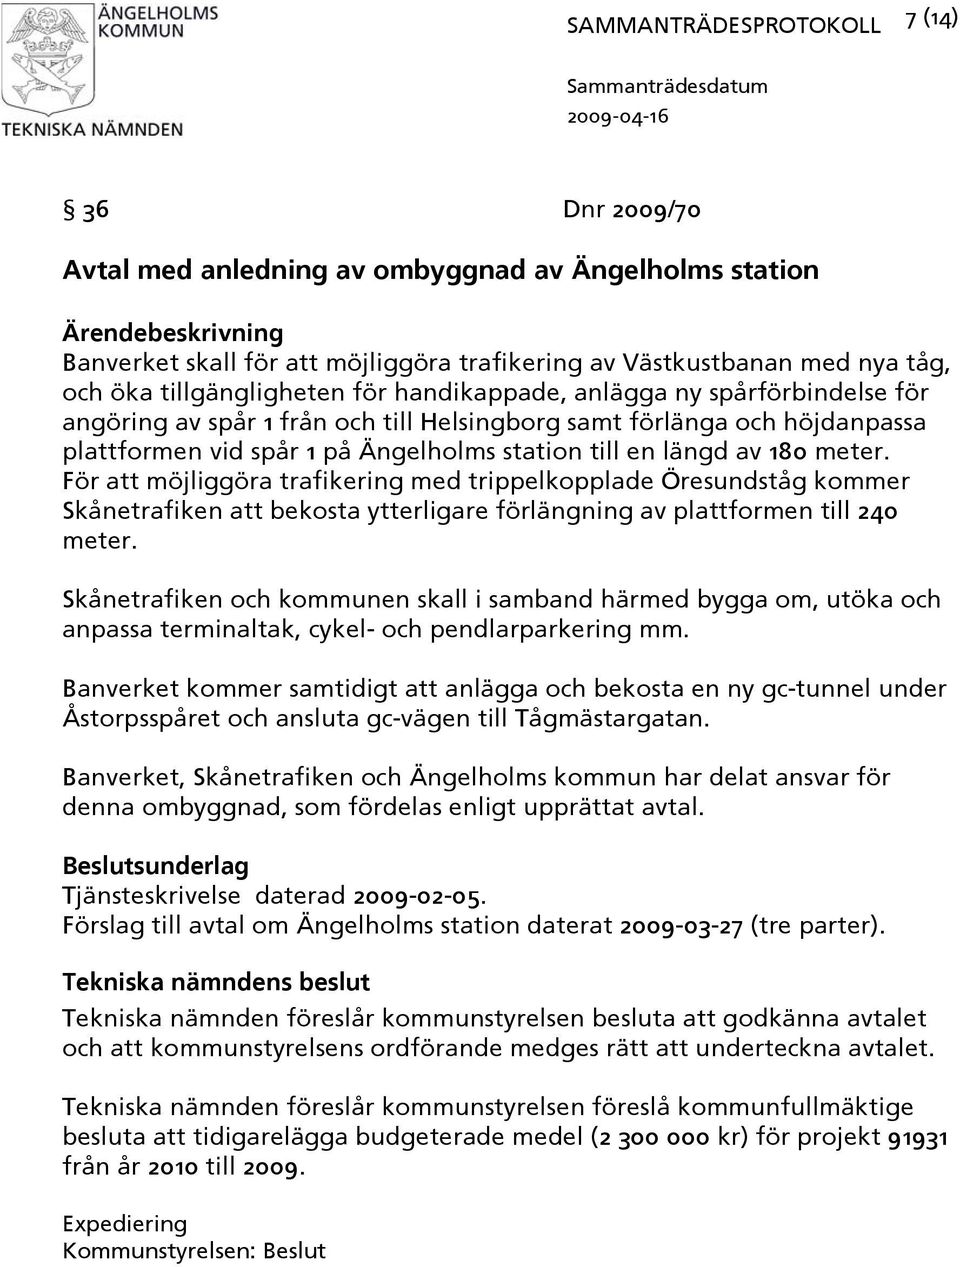 För att möjliggöra trafikering med trippelkopplade Öresundståg kommer Skånetrafiken att bekosta ytterligare förlängning av plattformen till 240 meter.